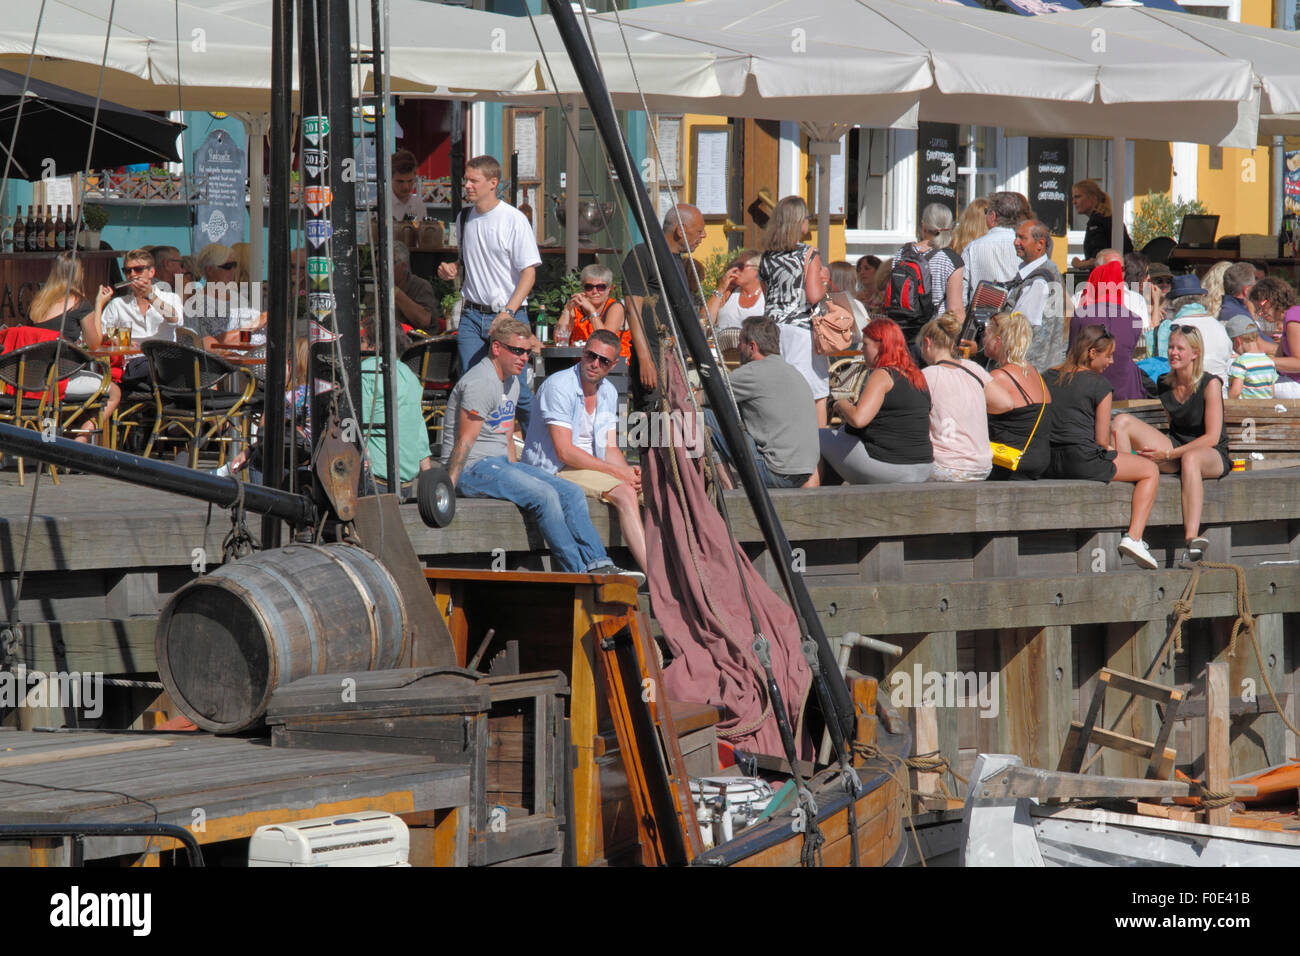 Leute treffen und reden, um sich bei einem Drink in der Sonne auf dem Kai im gemütlichen Ambiente in bezaubernden Nyhavn. Viele bevorzugen auf der Werft unter den alten Schiffen zu sitzen. Hygge. Stockfoto